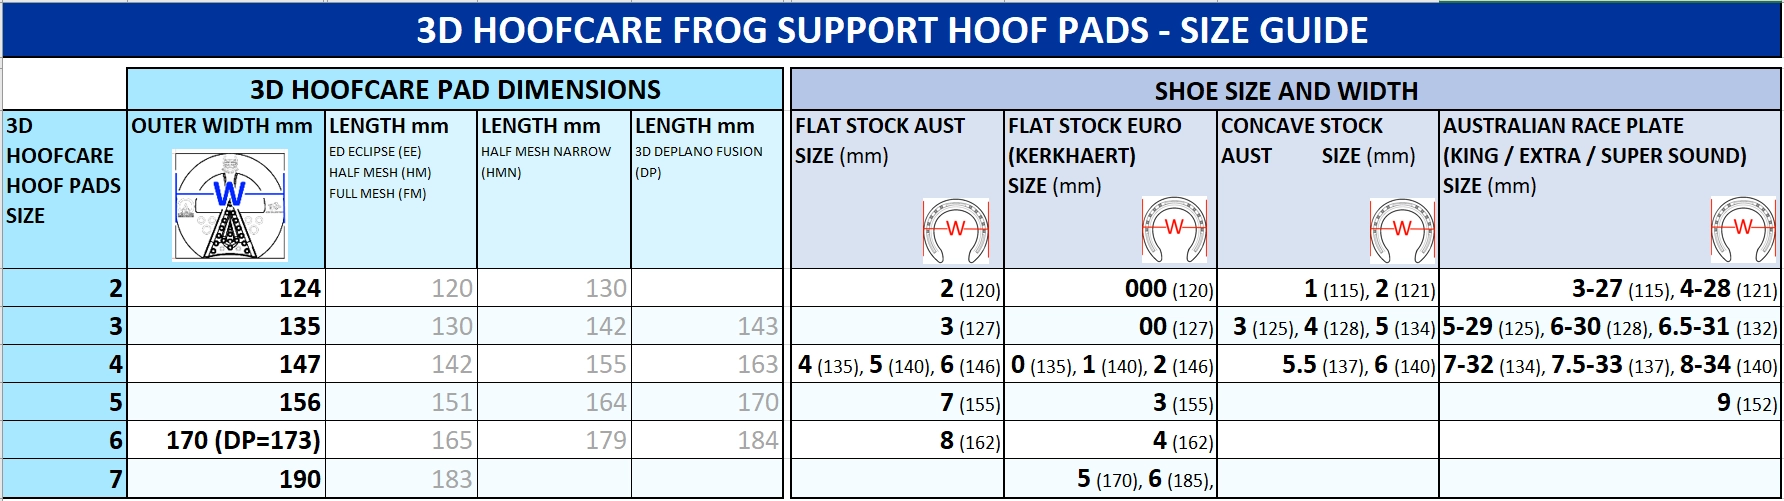 3D HoofCare Hoof Pad Size Guide